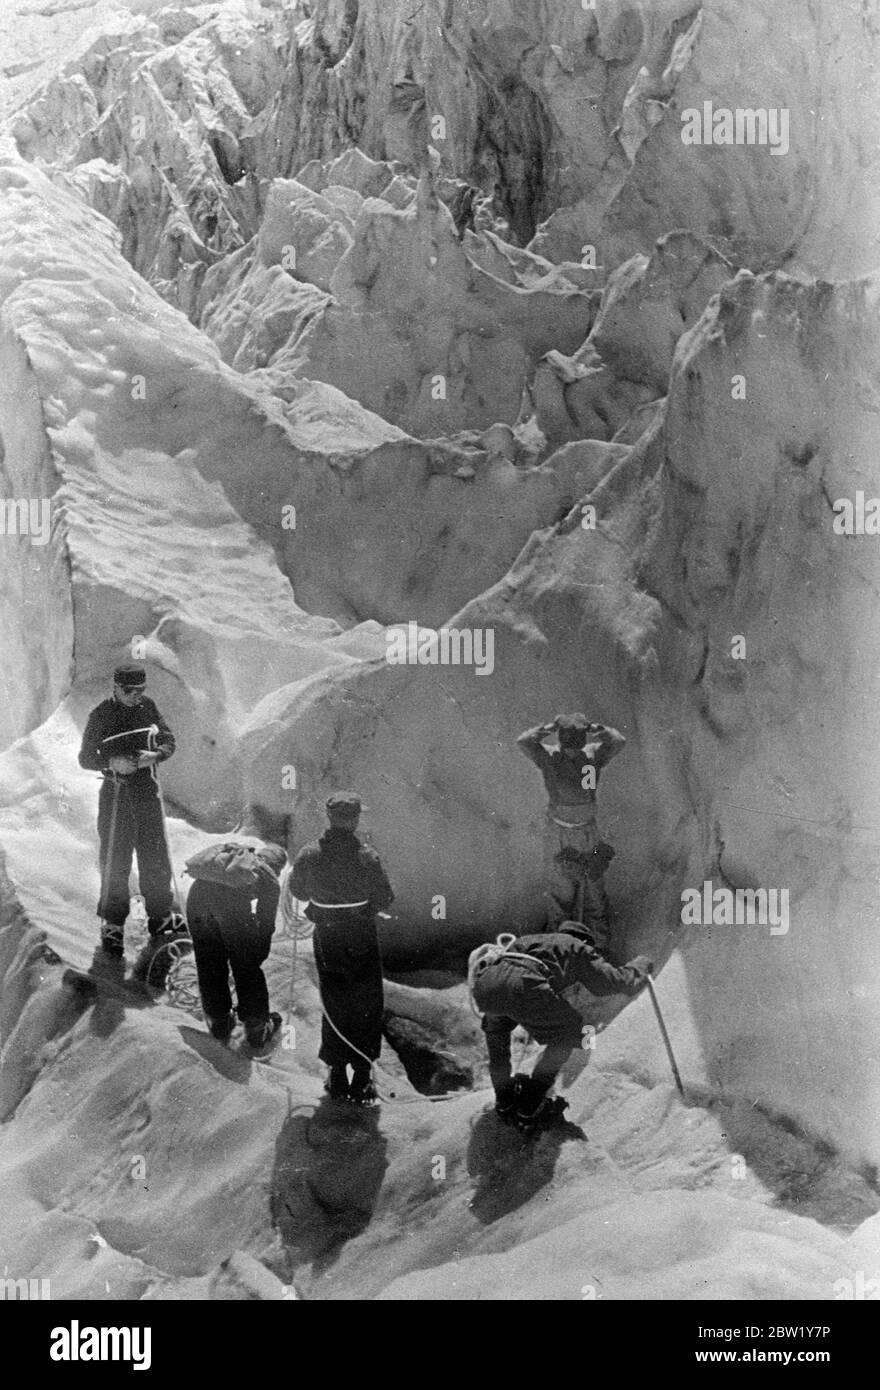 Météo hiver beauté vit tout l'été. Apprendre l'escalade dans un fairyland caucasien. Tout au long de l'été, au milieu de scènes d'une beauté hivernale à couper le souffle, de jeunes aspirants à l'escalade de montagne de villes de toute la Russie reçoivent une formation en alpinisme au camp de montagne des syndicats soviétiques dans le ravine d'Adyl su, dans le Nord du Caucase. Sous la direction d'instructeurs expérimentés, les grimpeurs reçoivent une formation approfondie sur le glacier entourant le camp, puis sont organisés en groupes pour des tentatives sur Elbrus, Jantugan et d'autres pics caucasiens difficiles. Des spectacles photo, une fête c Banque D'Images